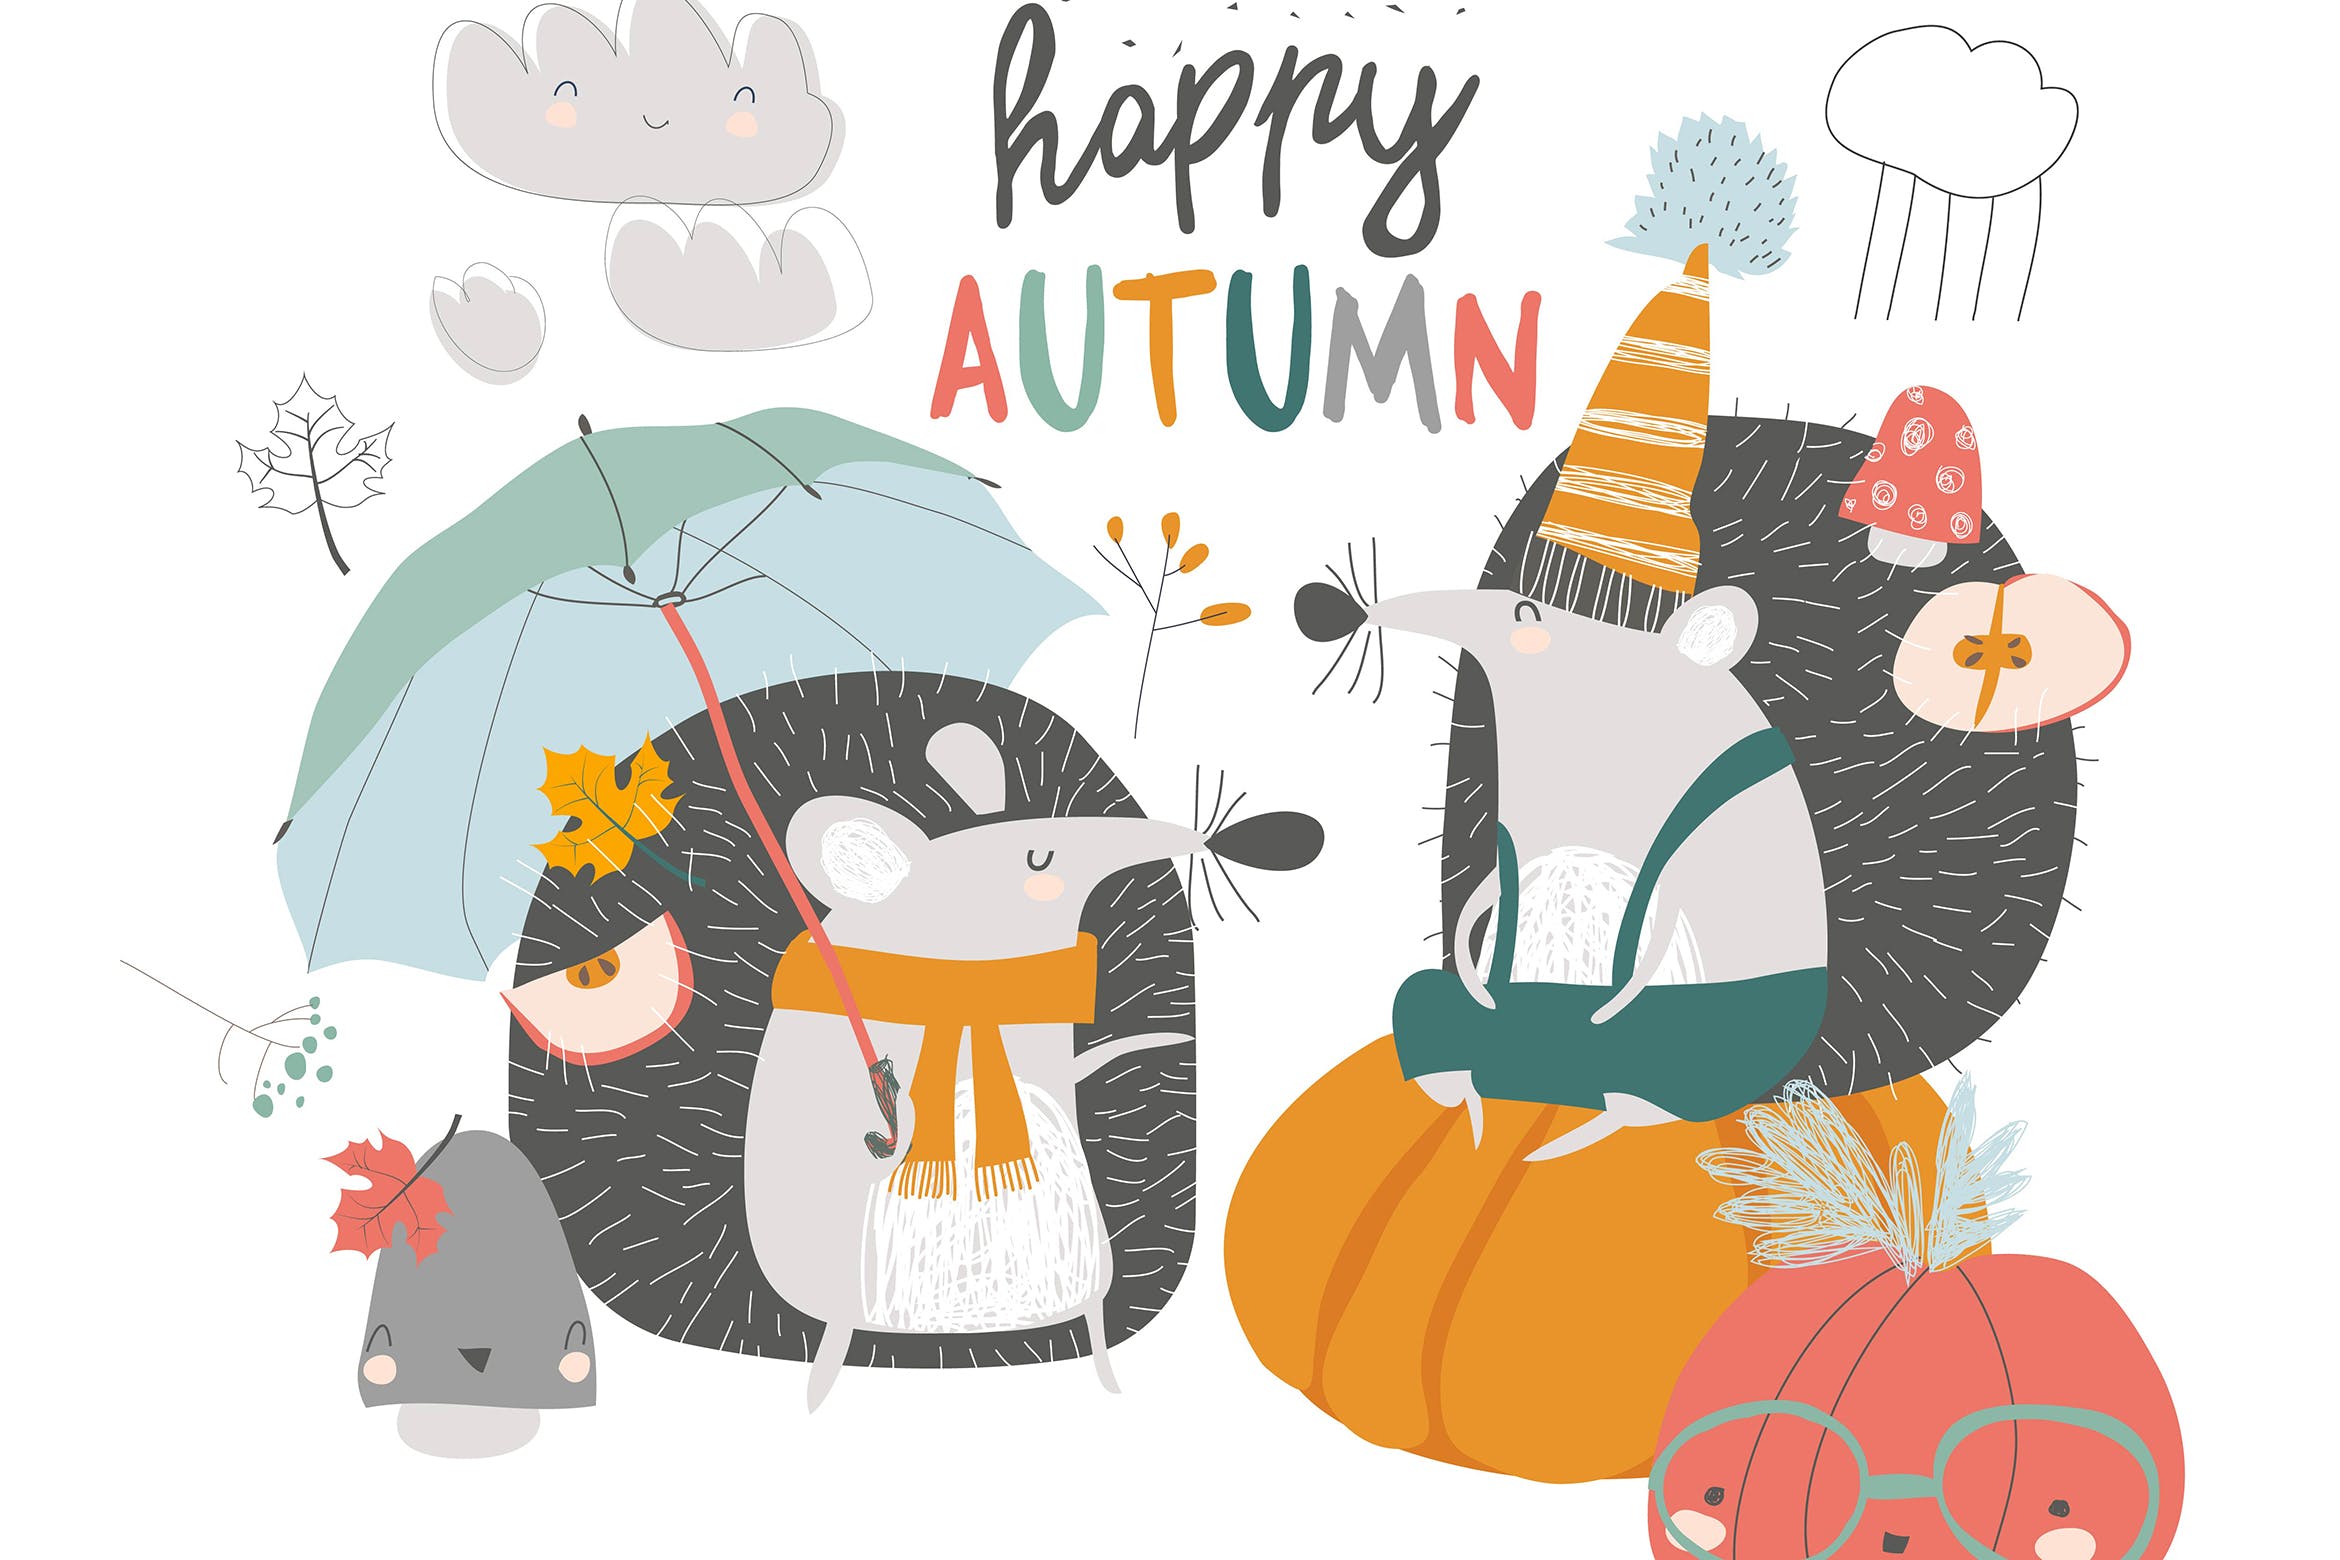 可爱秋日刺猬&南瓜手绘矢量插画普贤居精选设计素材 Cute autumn Hedgehogs with umbrella and pumpkins.插图